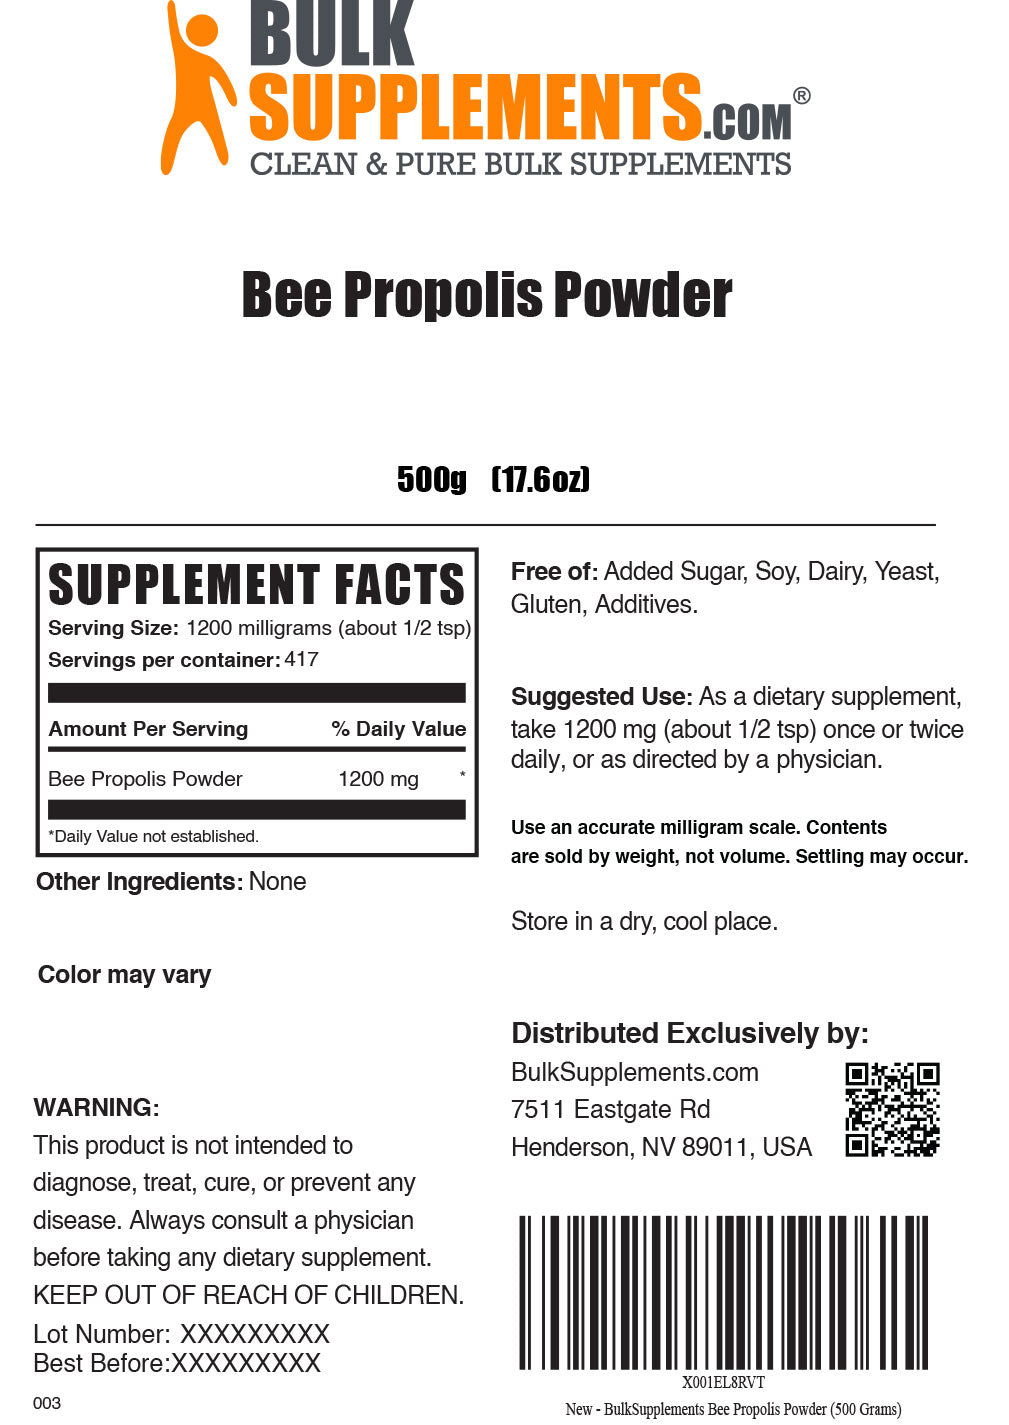 Bee Propolis supplement